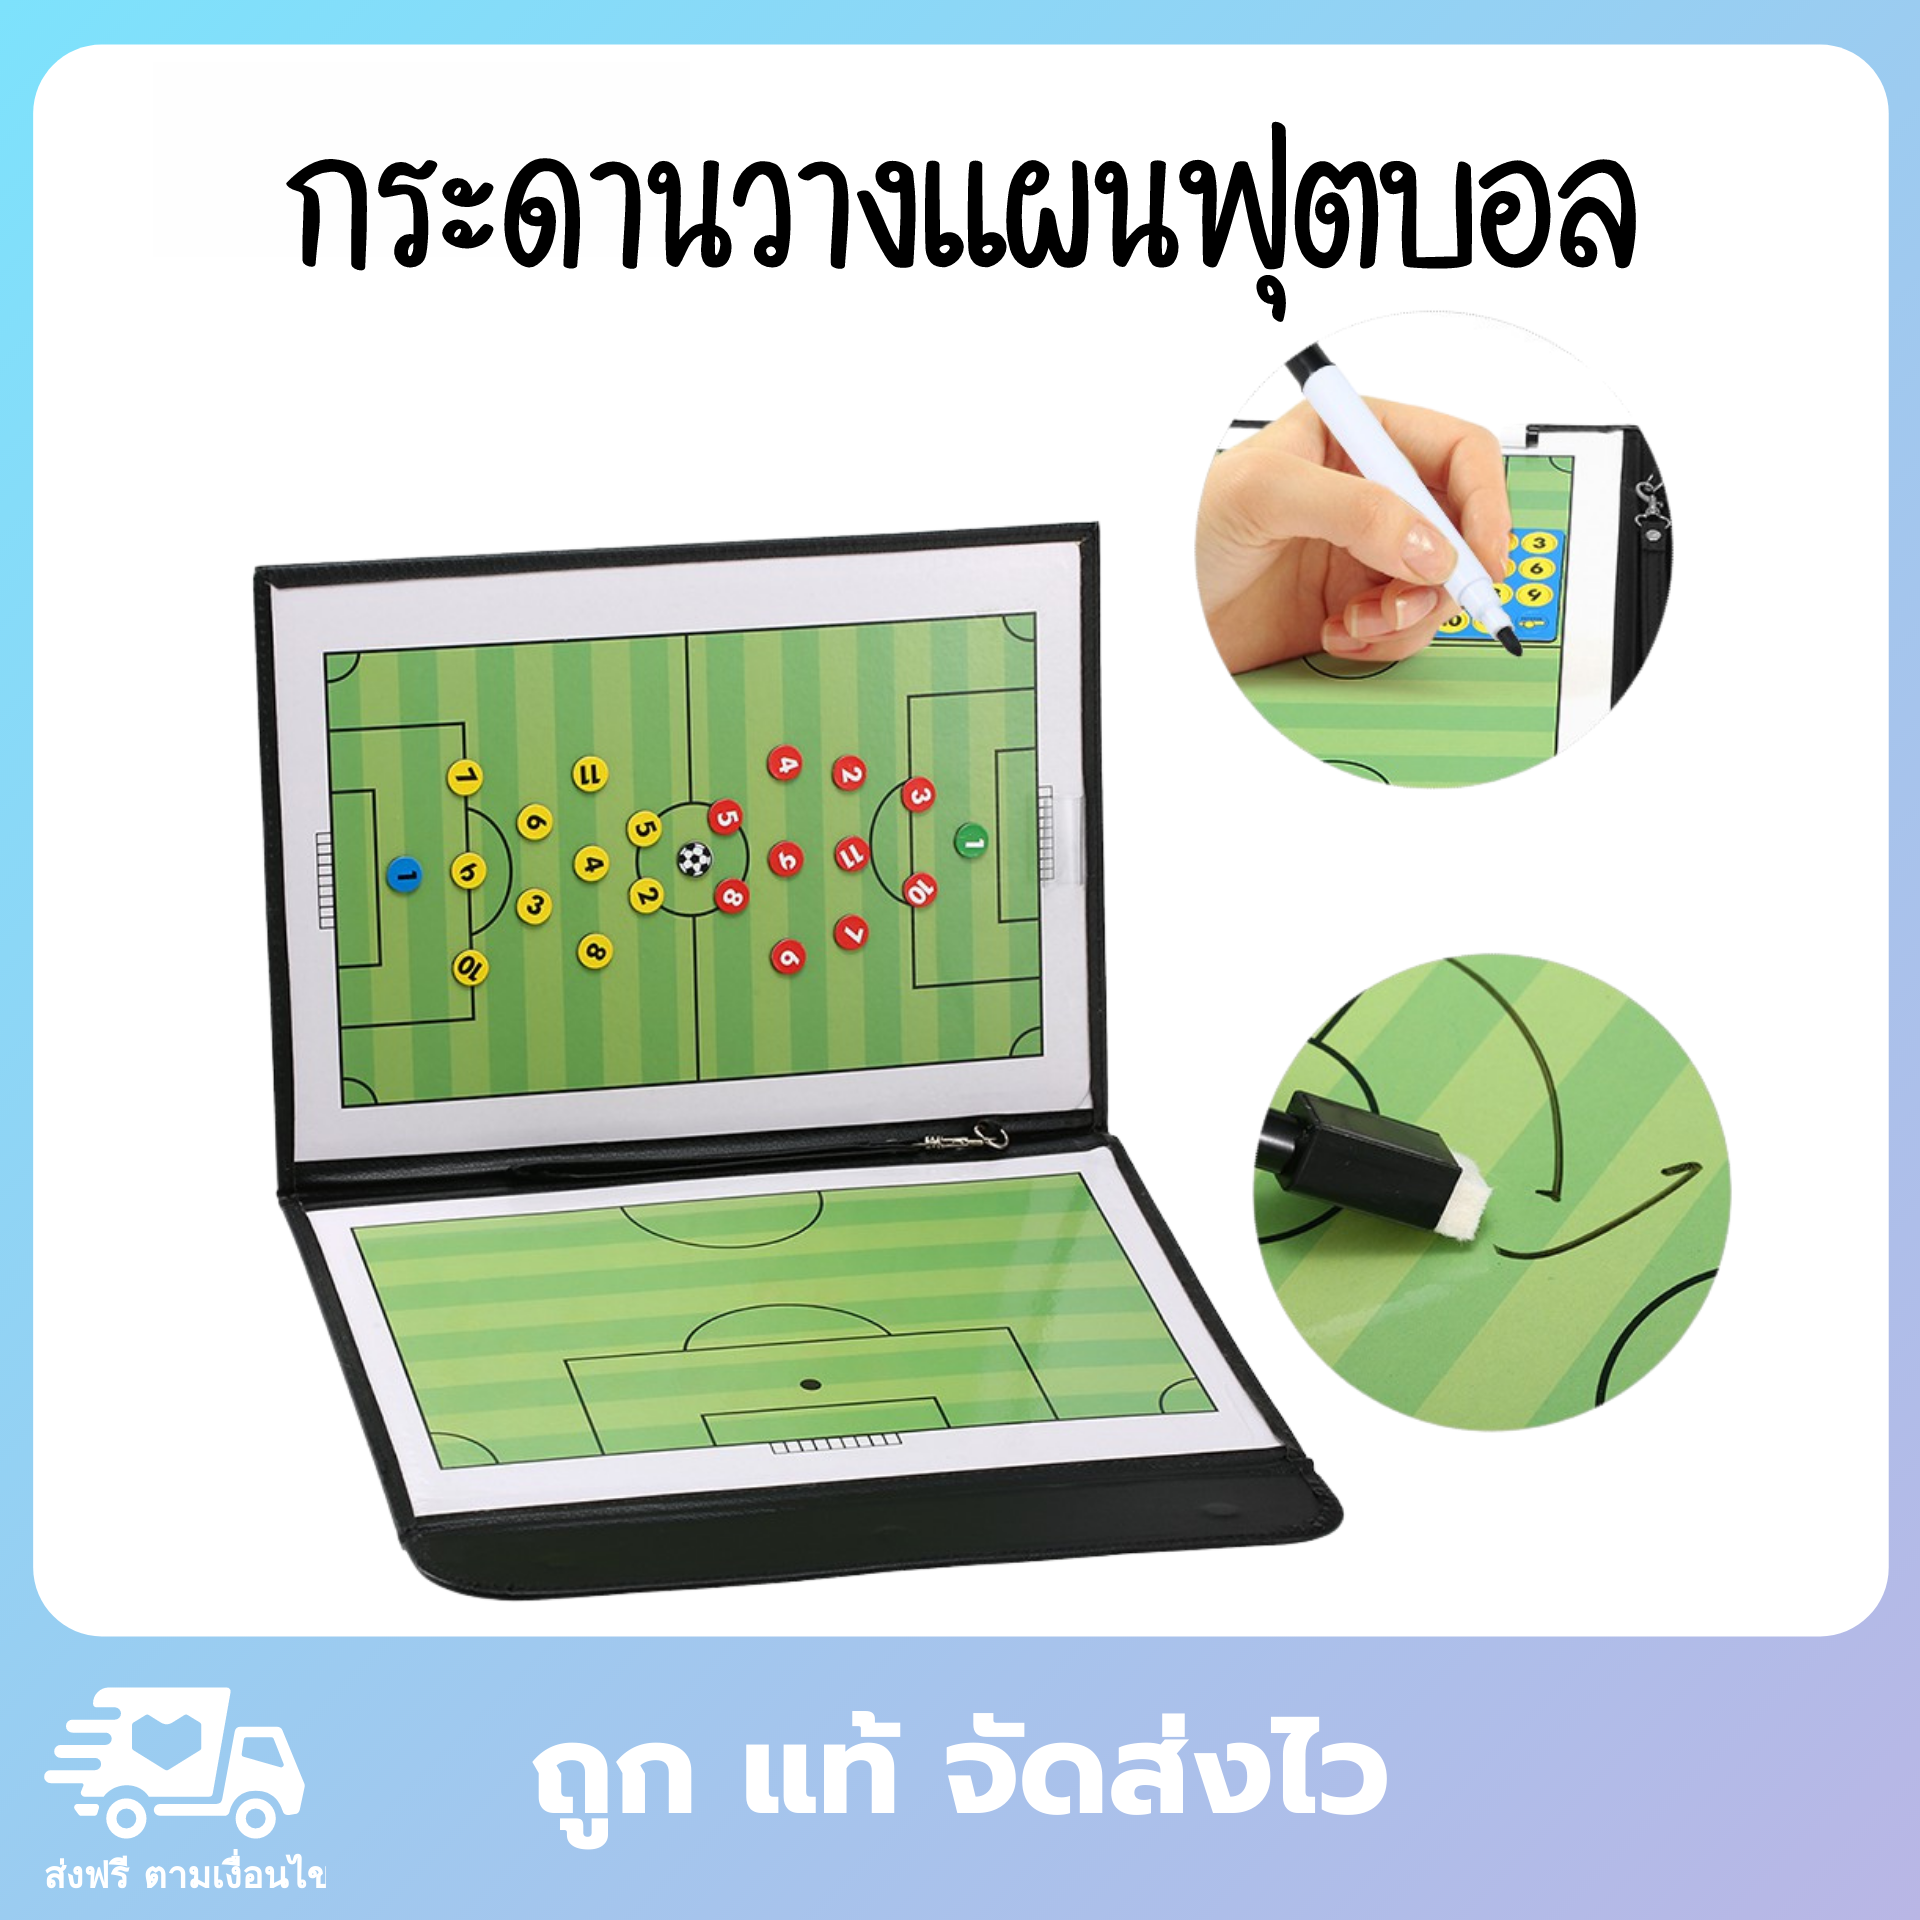 กระดานวางแผนฟุตบอล กระดานฟุตบอล กระดานวางแผน อุปกรณ์ซ้อมบอล อุปกรณ์กีฬา กระดานแม่เหล็กวางแผนฟุตบอล Soccer Coaches Board